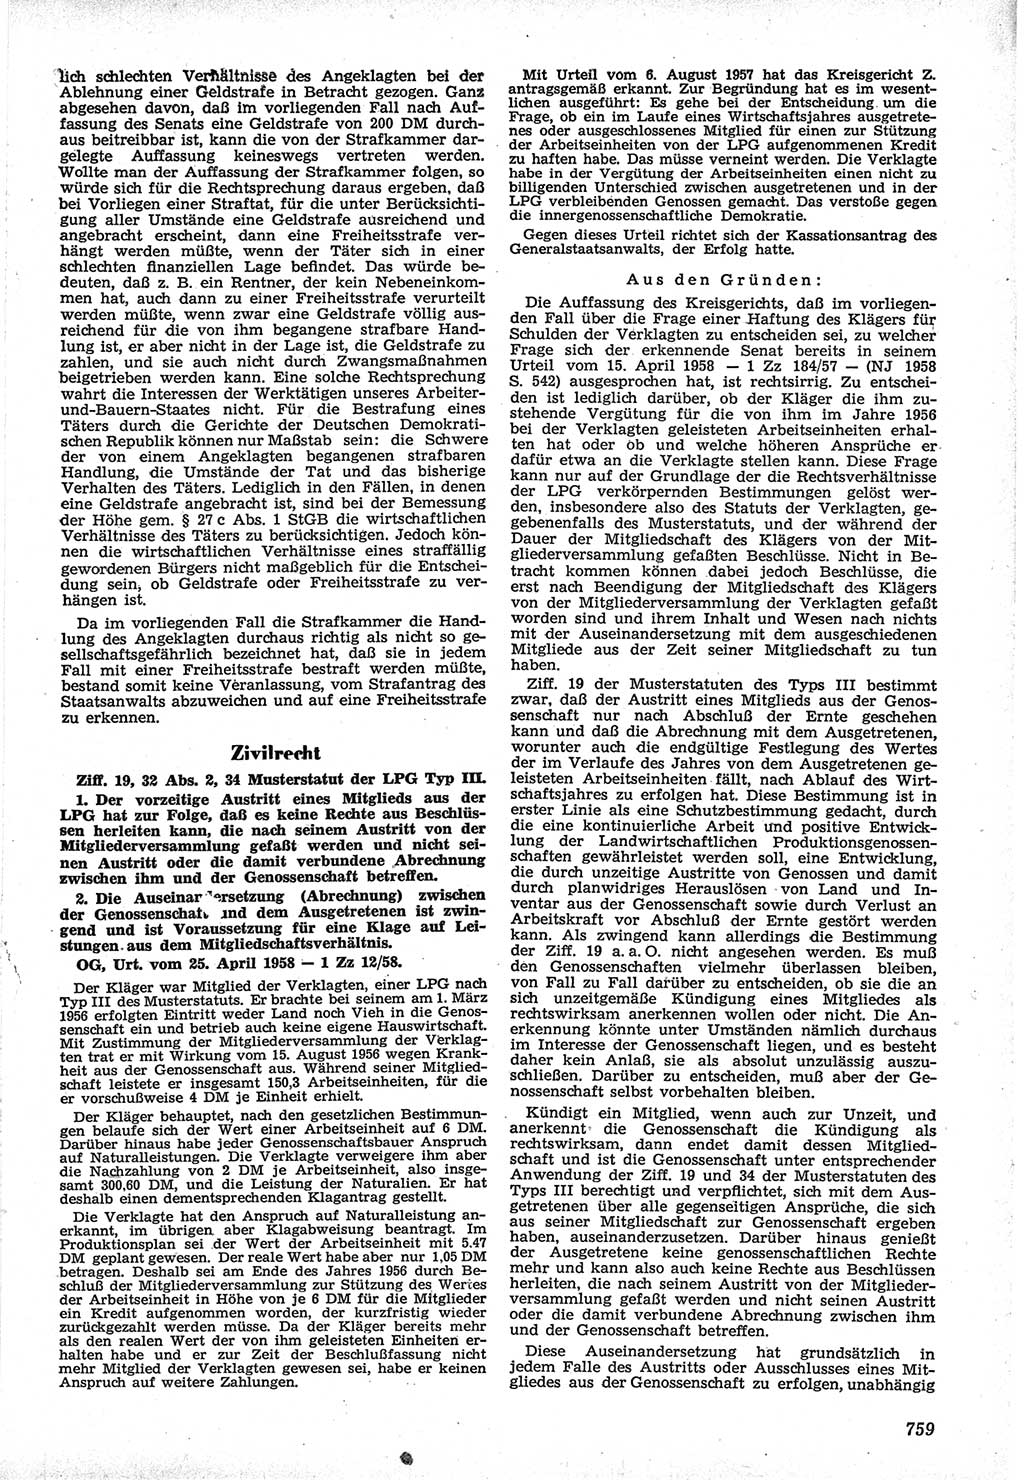 Neue Justiz (NJ), Zeitschrift für Recht und Rechtswissenschaft [Deutsche Demokratische Republik (DDR)], 12. Jahrgang 1958, Seite 759 (NJ DDR 1958, S. 759)